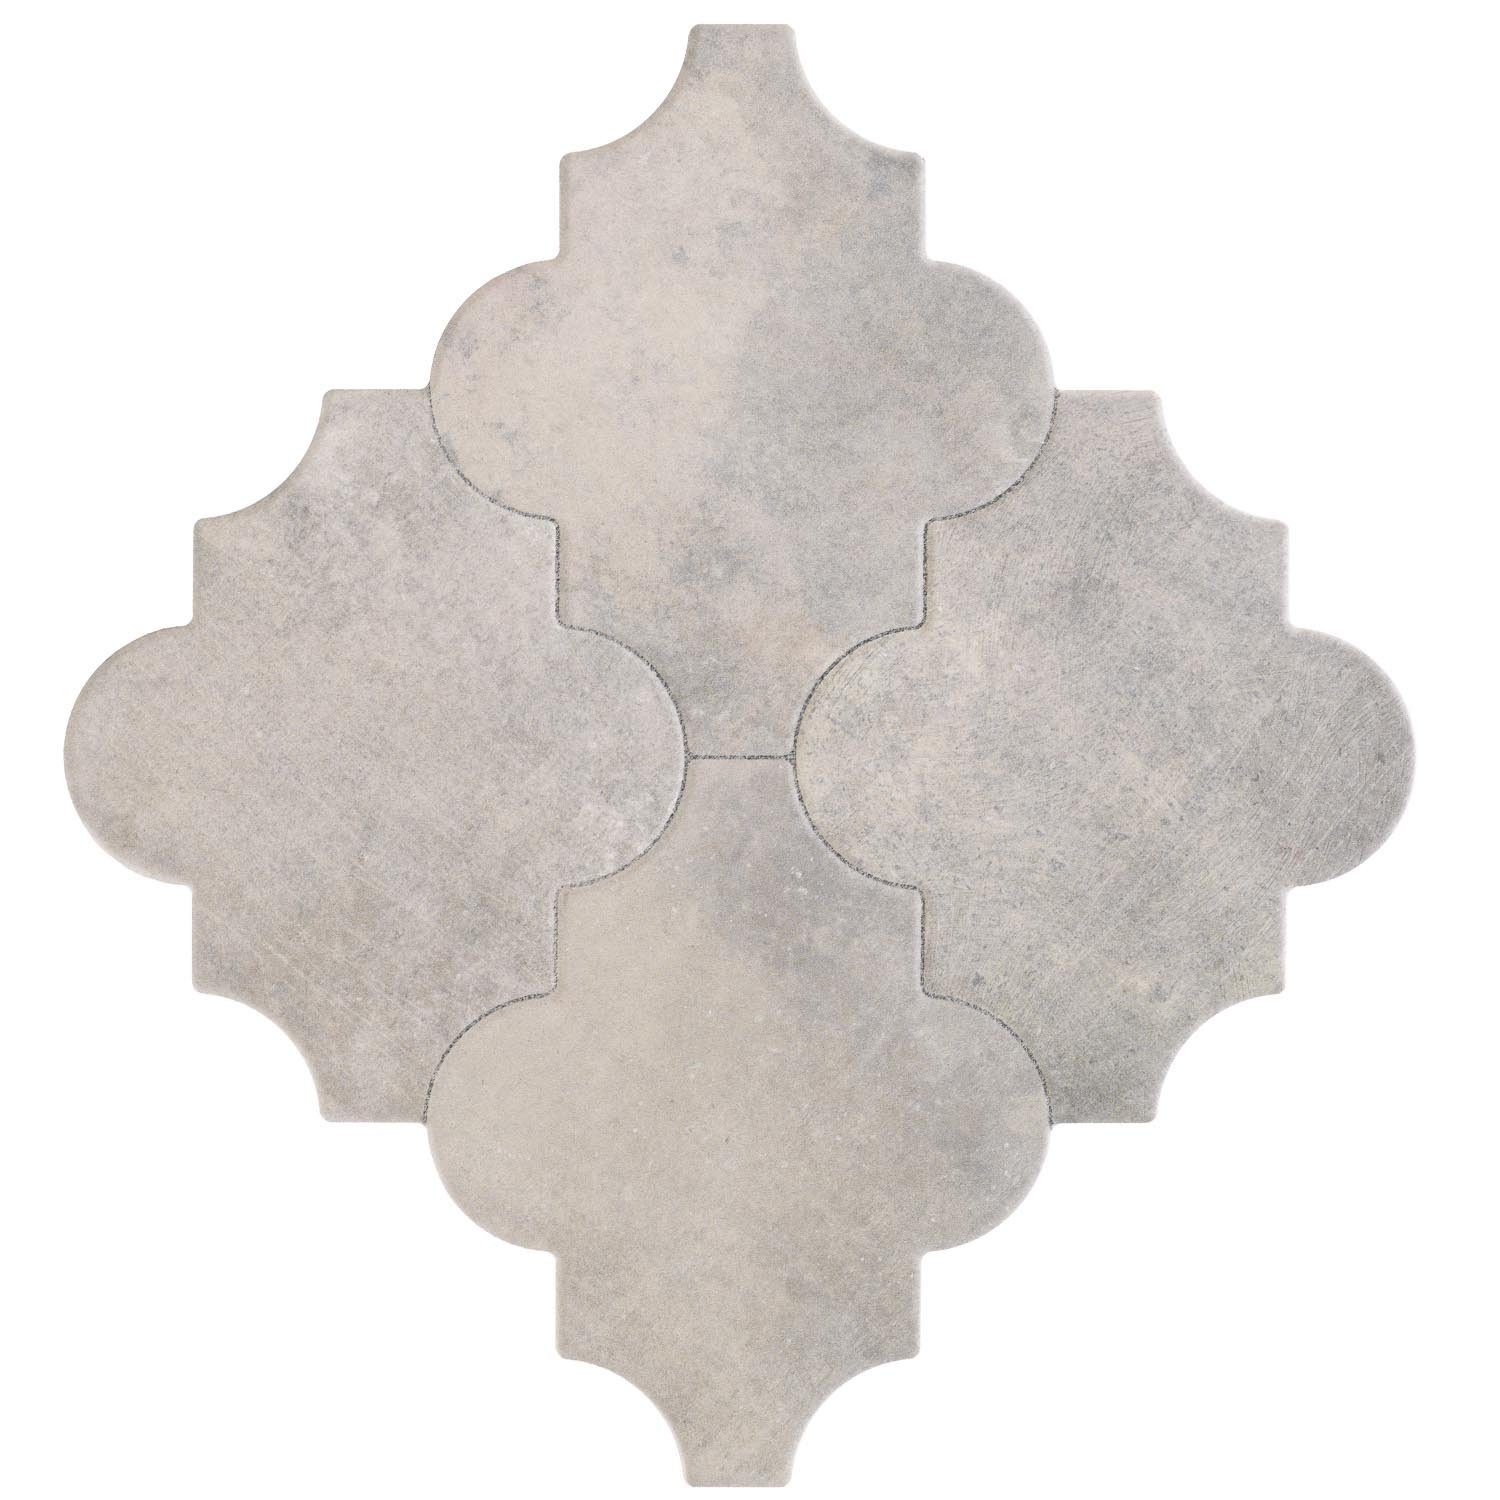 Betonoptik, & Fliesen Marokkanische Orientalische 45x45, Boden 1m² für Casa Keramik mit FL2037 Bunt, Arabesque und Wand, Moro Keramikfliesen, Form Risha Bodenfliese